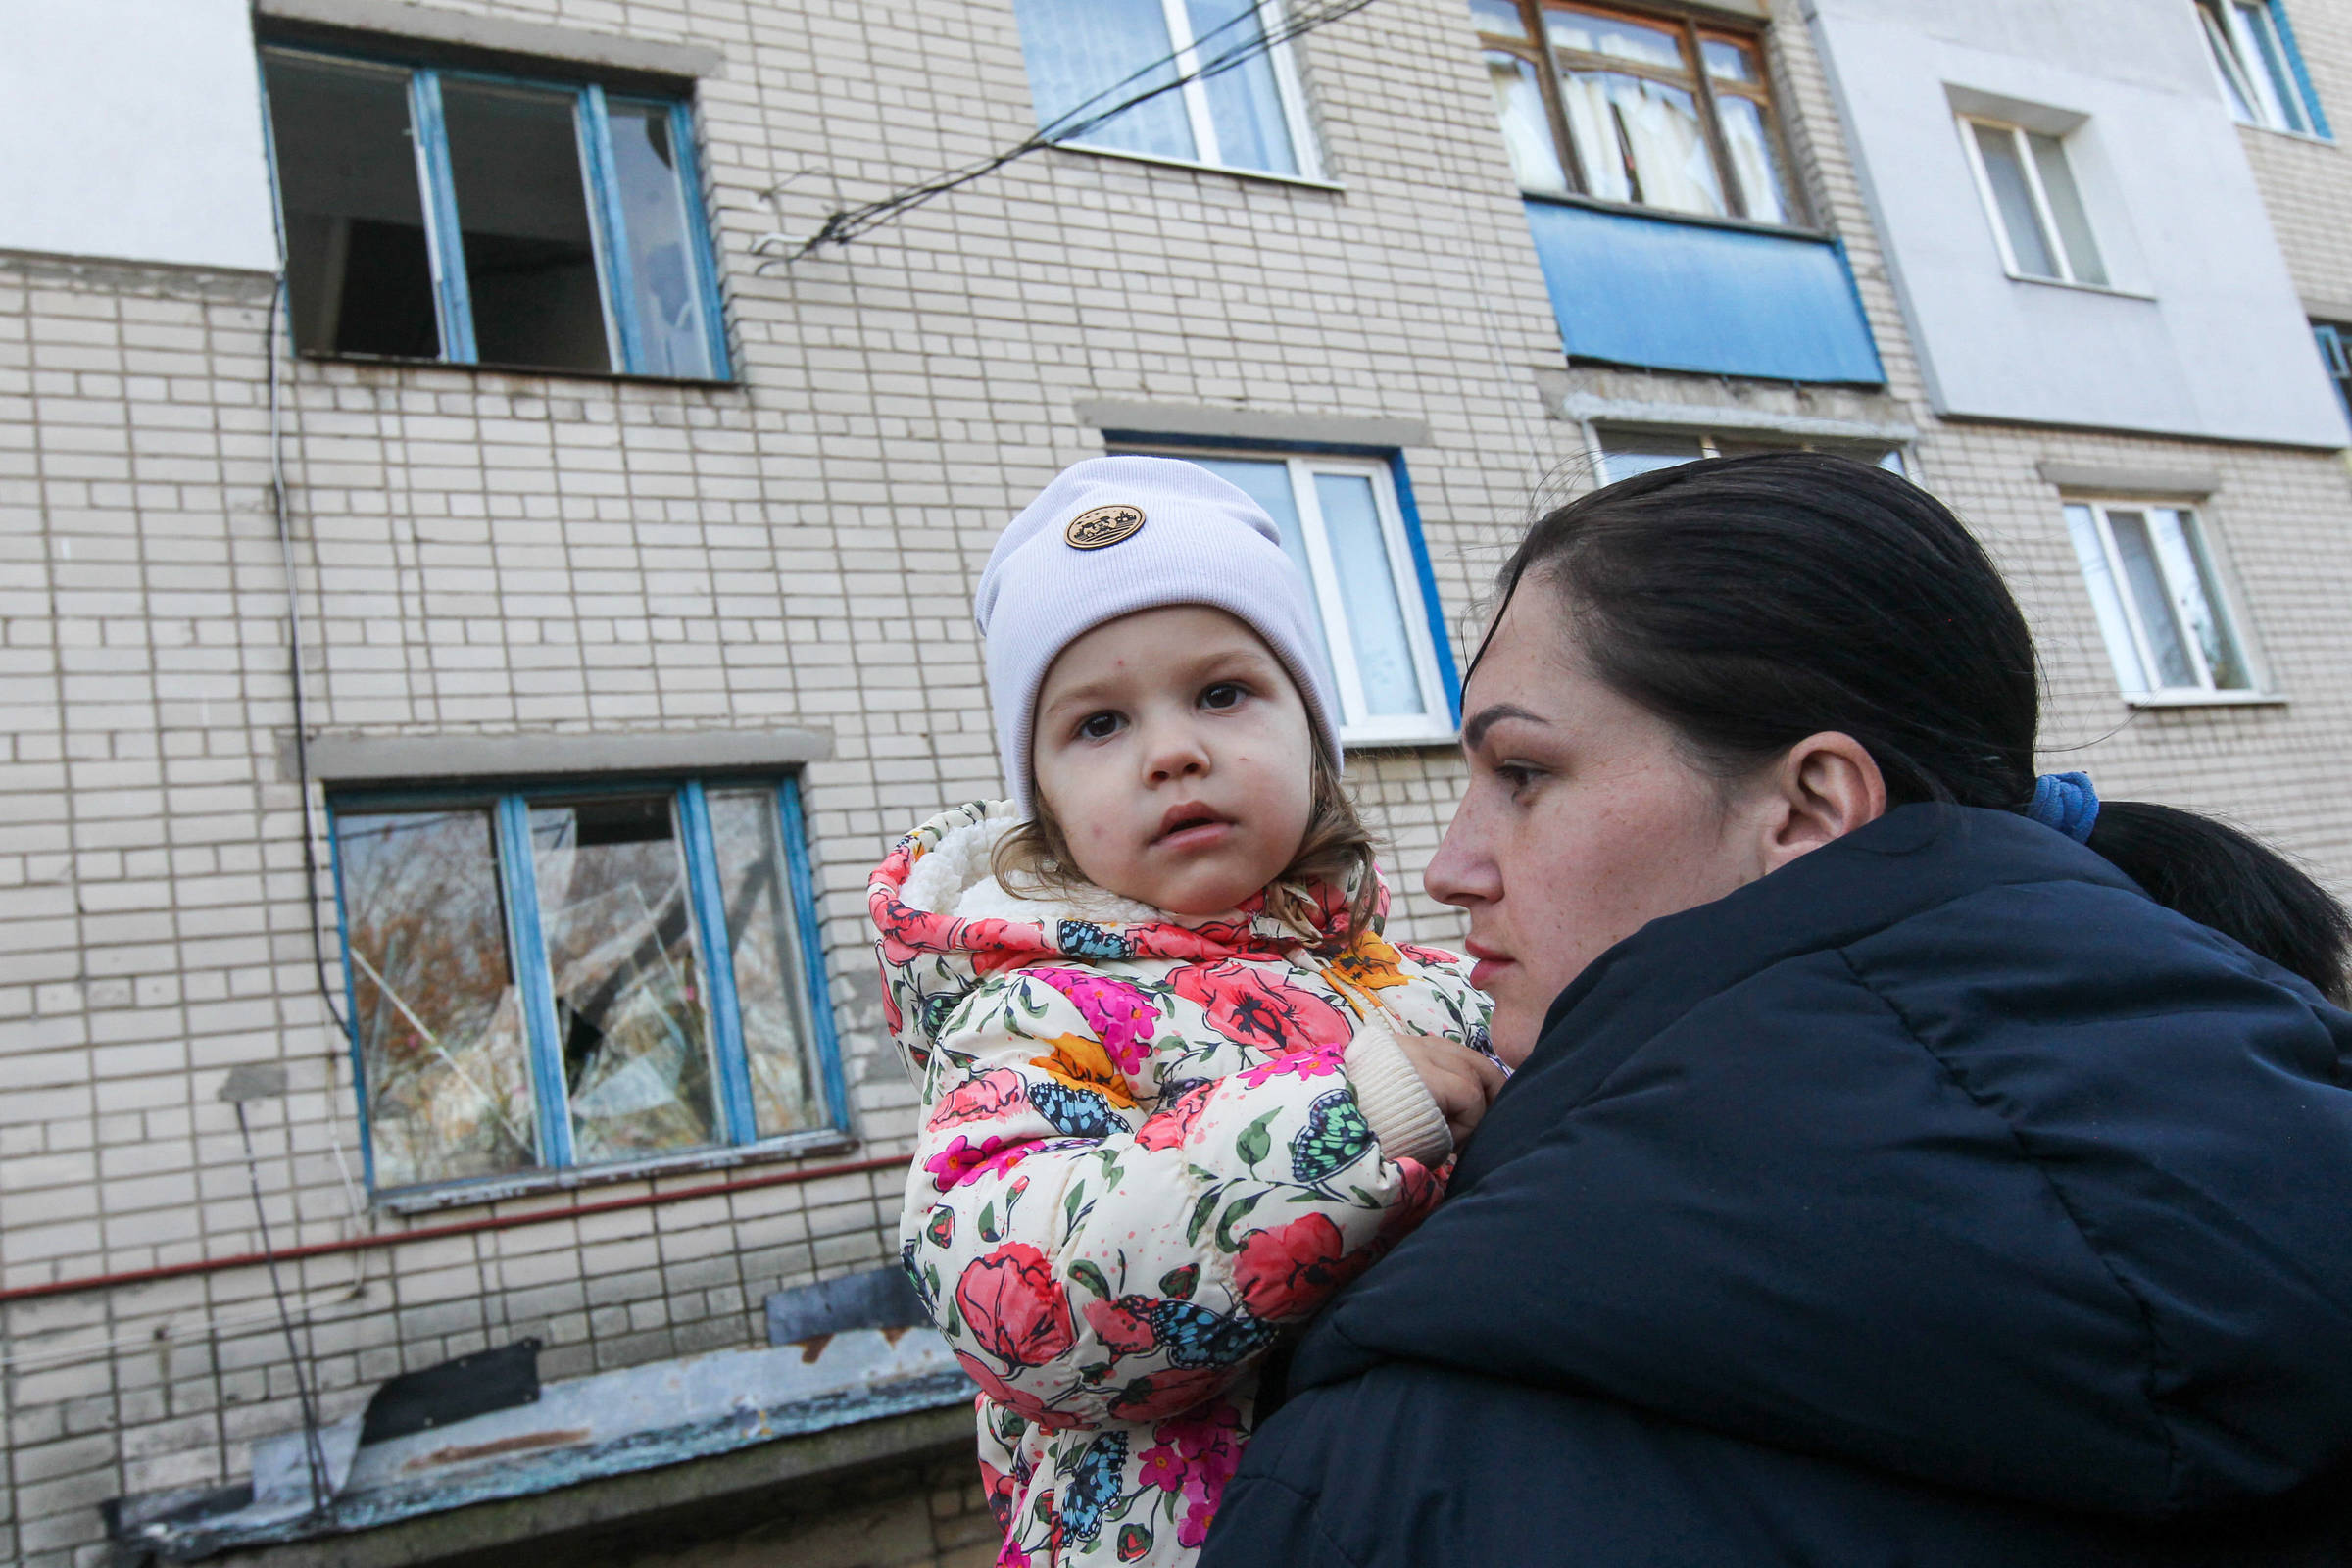 Ukrainische Mutter mit Kind (Quelle: IMAGO / ABACAPRESS / Ukrinform/ Myakshykov Mykola)